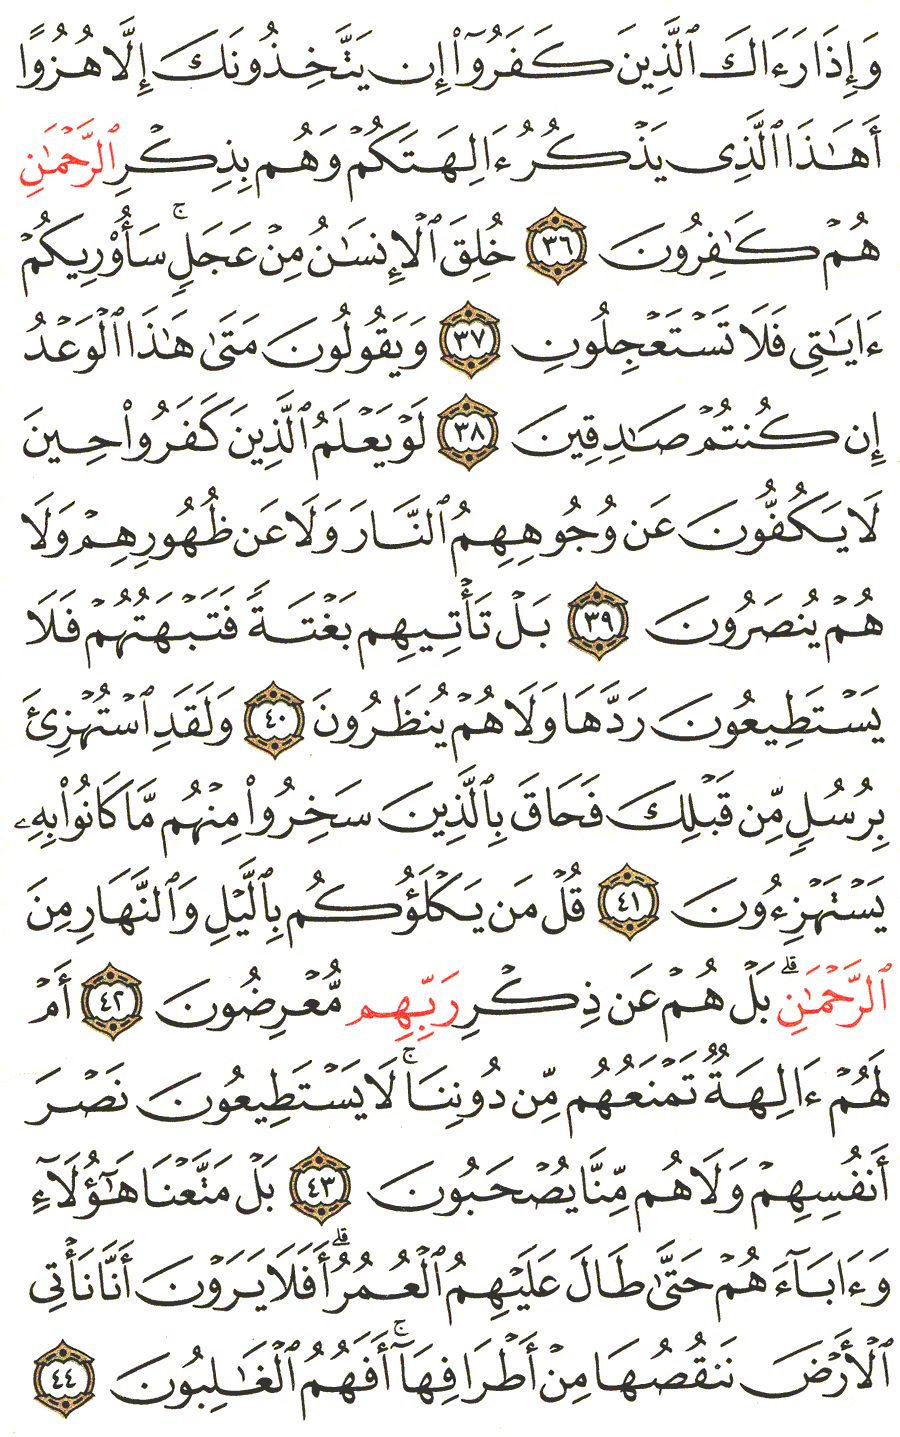 الصفحة 325 من القرآن الكريم